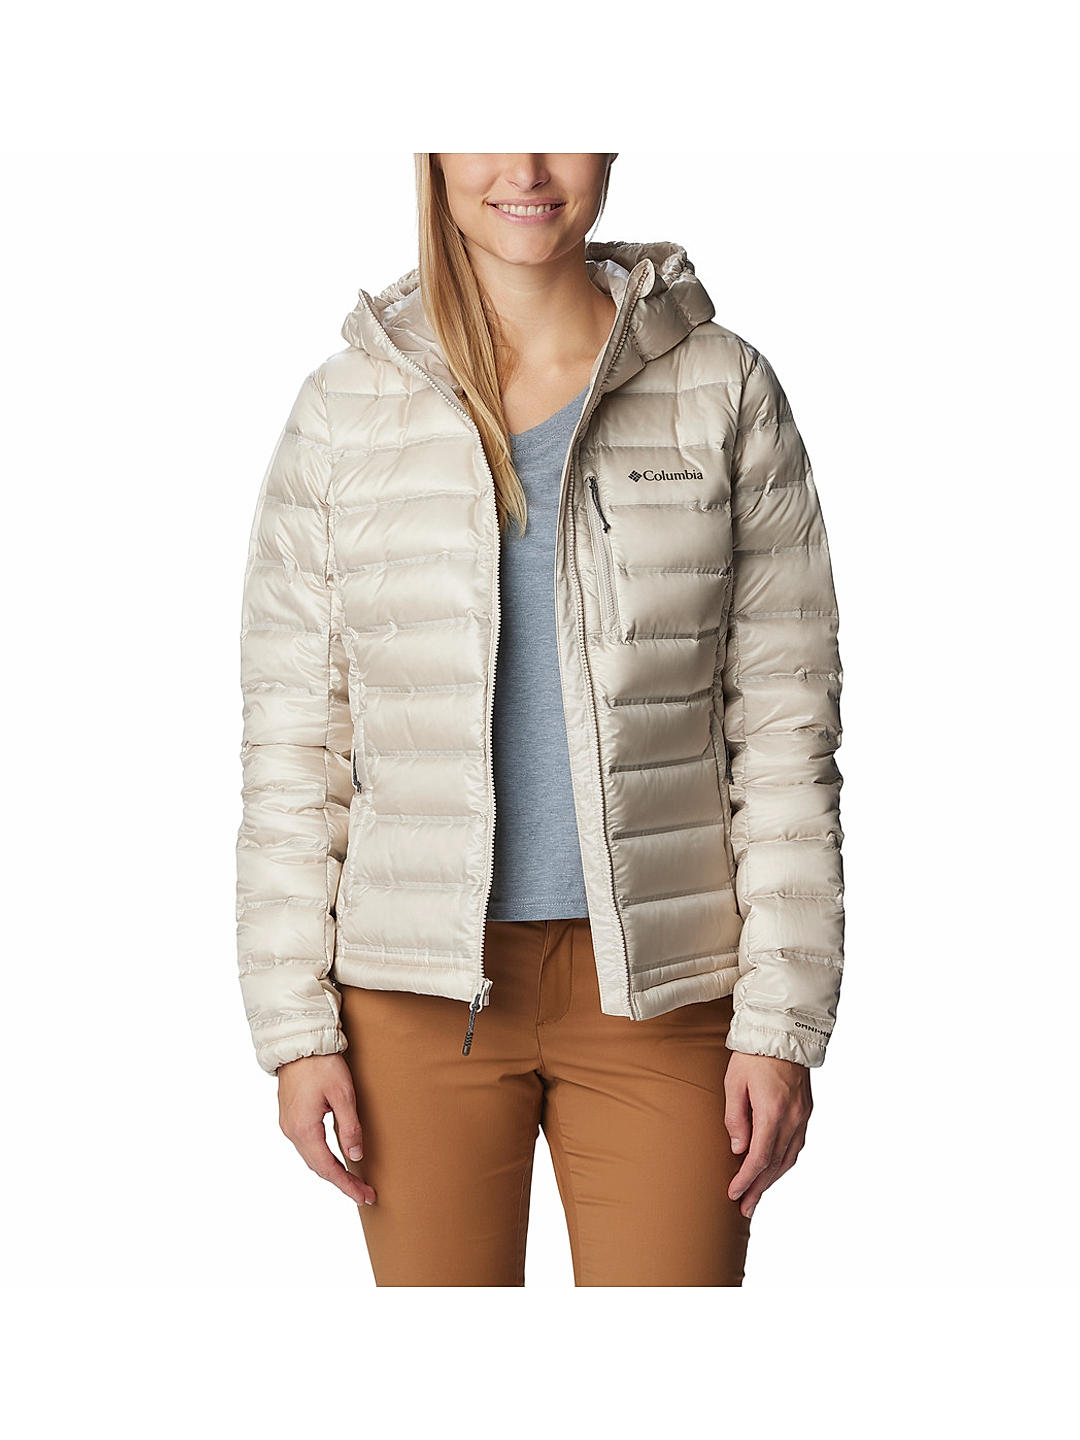 Women's Heavenly™ Long Hooded Jacket - Plus Size | Columbia Sportswear-atpcosmetics.com.vn